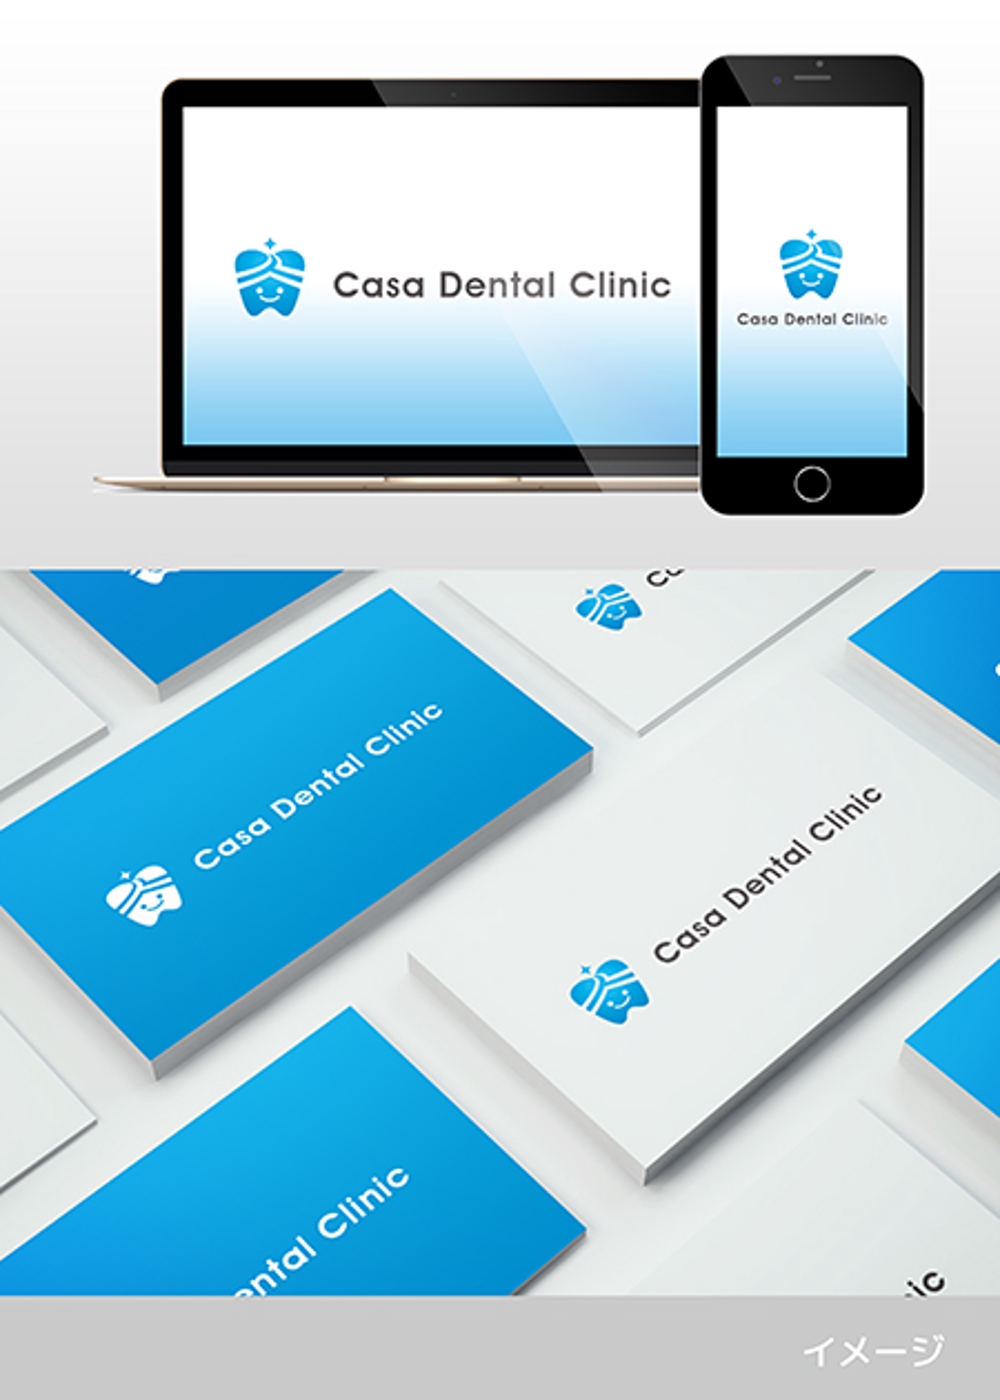 歯科医院 「Casa（家という意味） Dental Clinic」の ロゴ